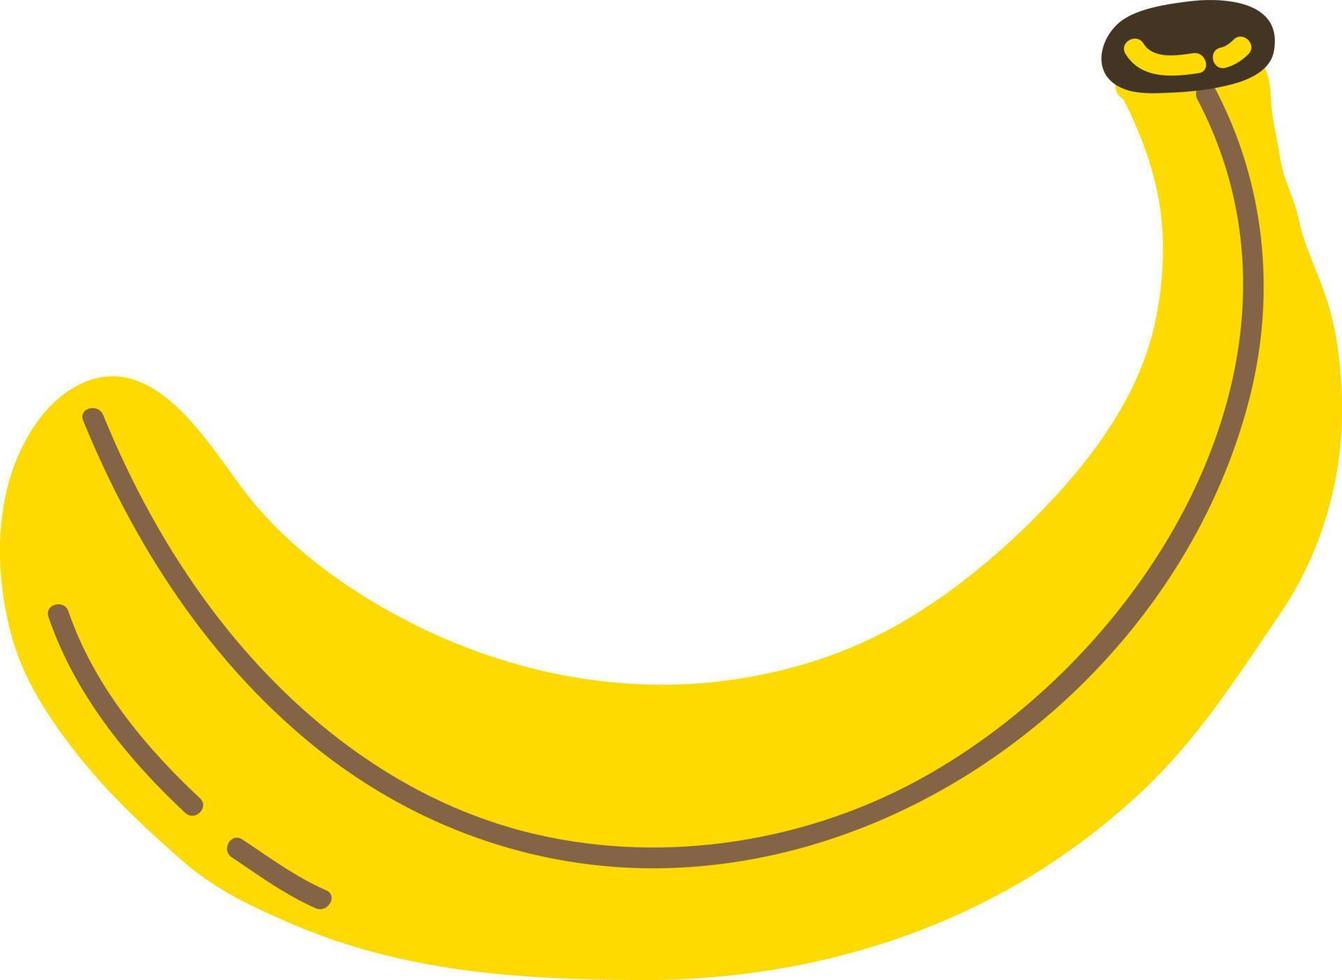 banana de frutas de estilo desenhado à mão vetor